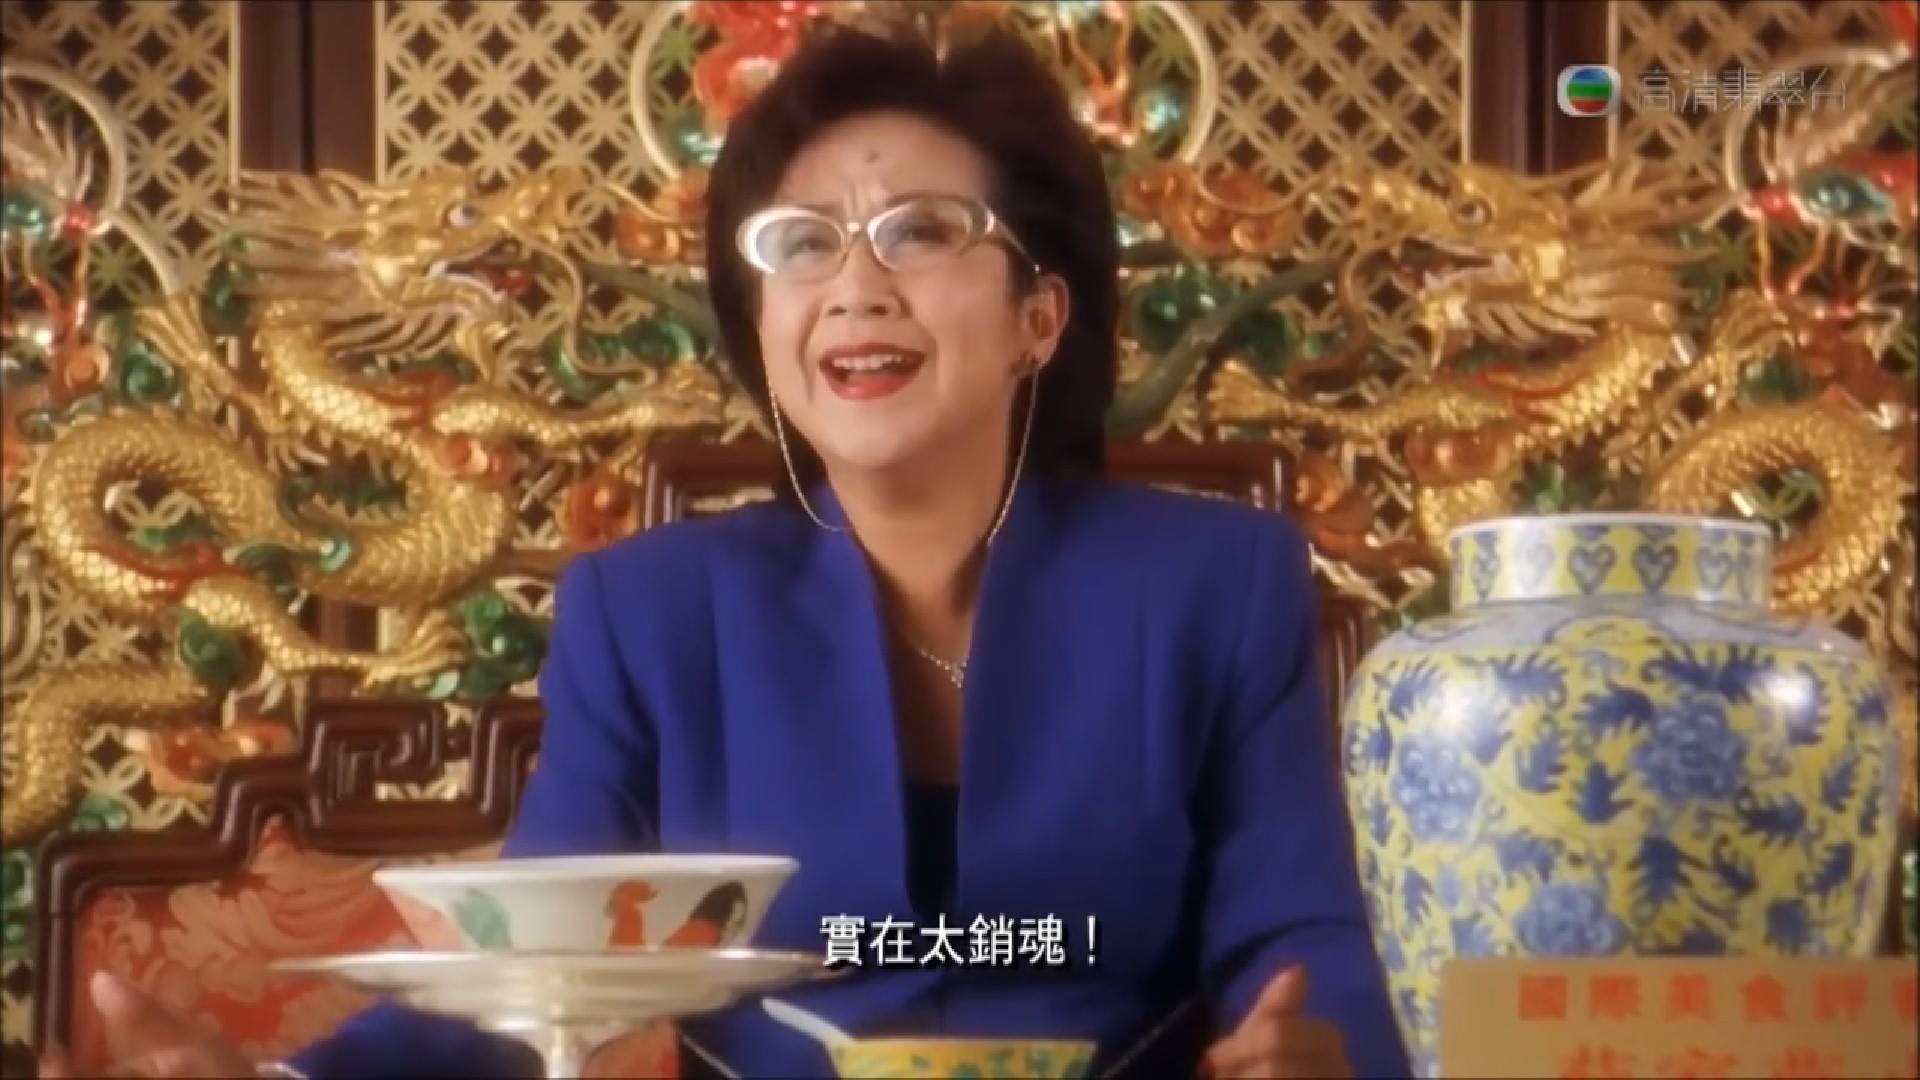 給給茶記。用公雞碗吃黯然銷魂飯｜嘉義人的香港時間